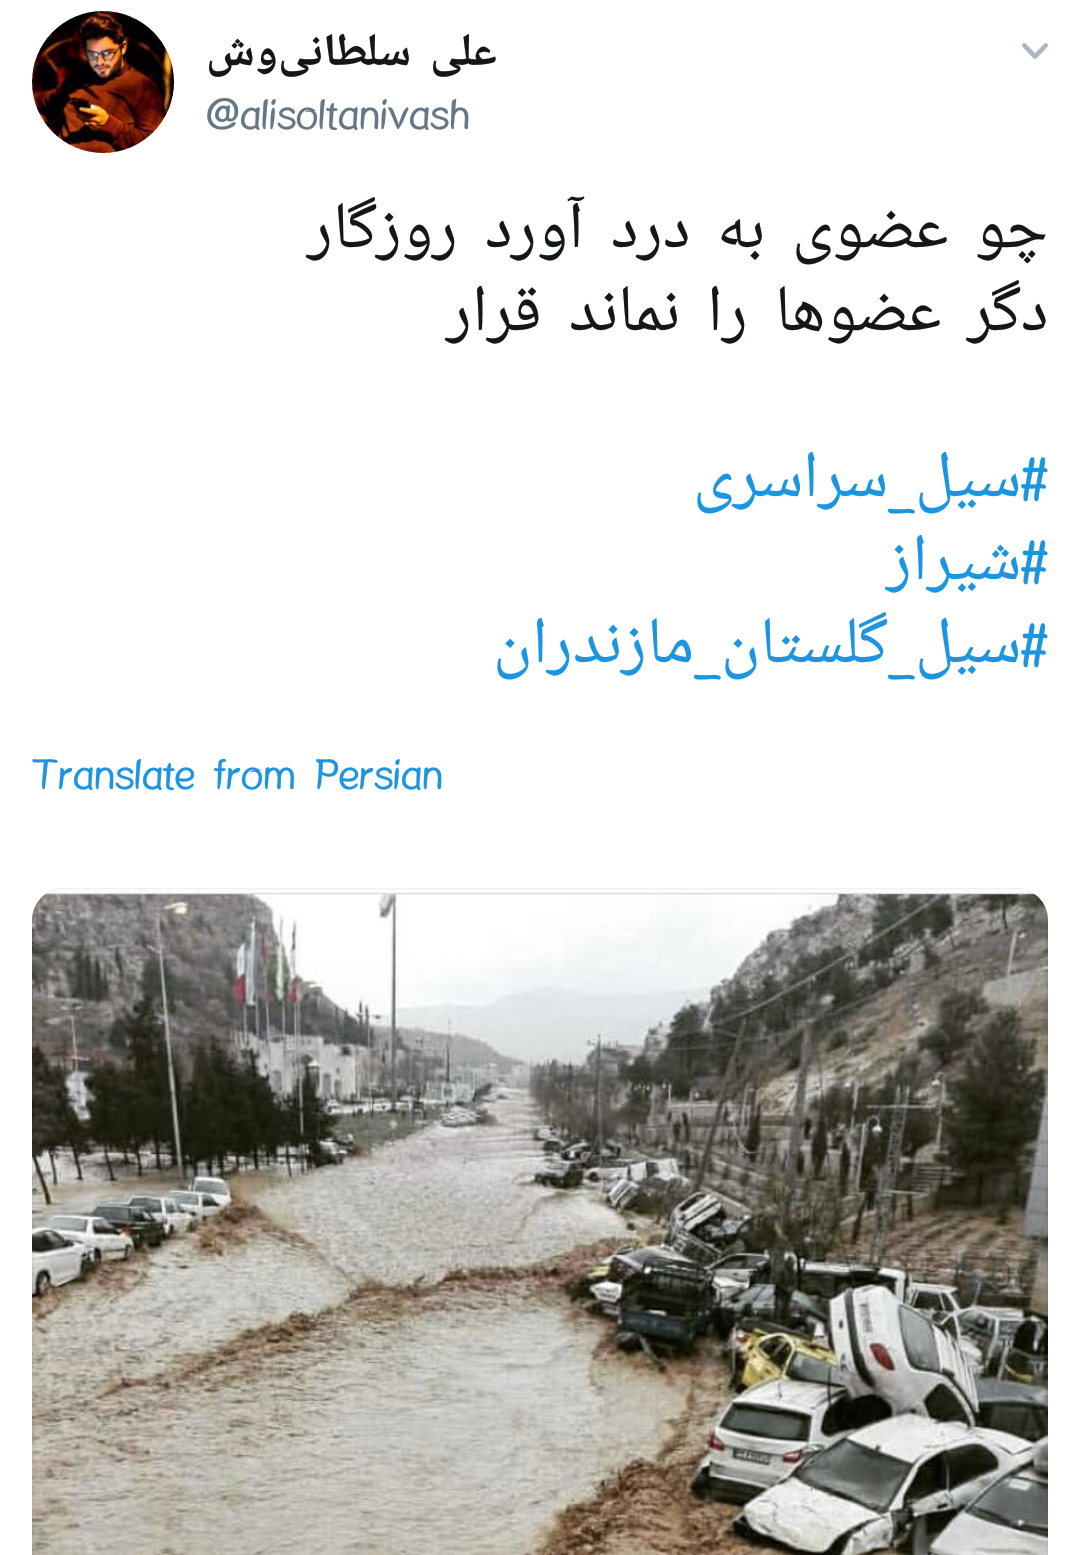 کلیپ غمگین برا سیل زدگان شیراز